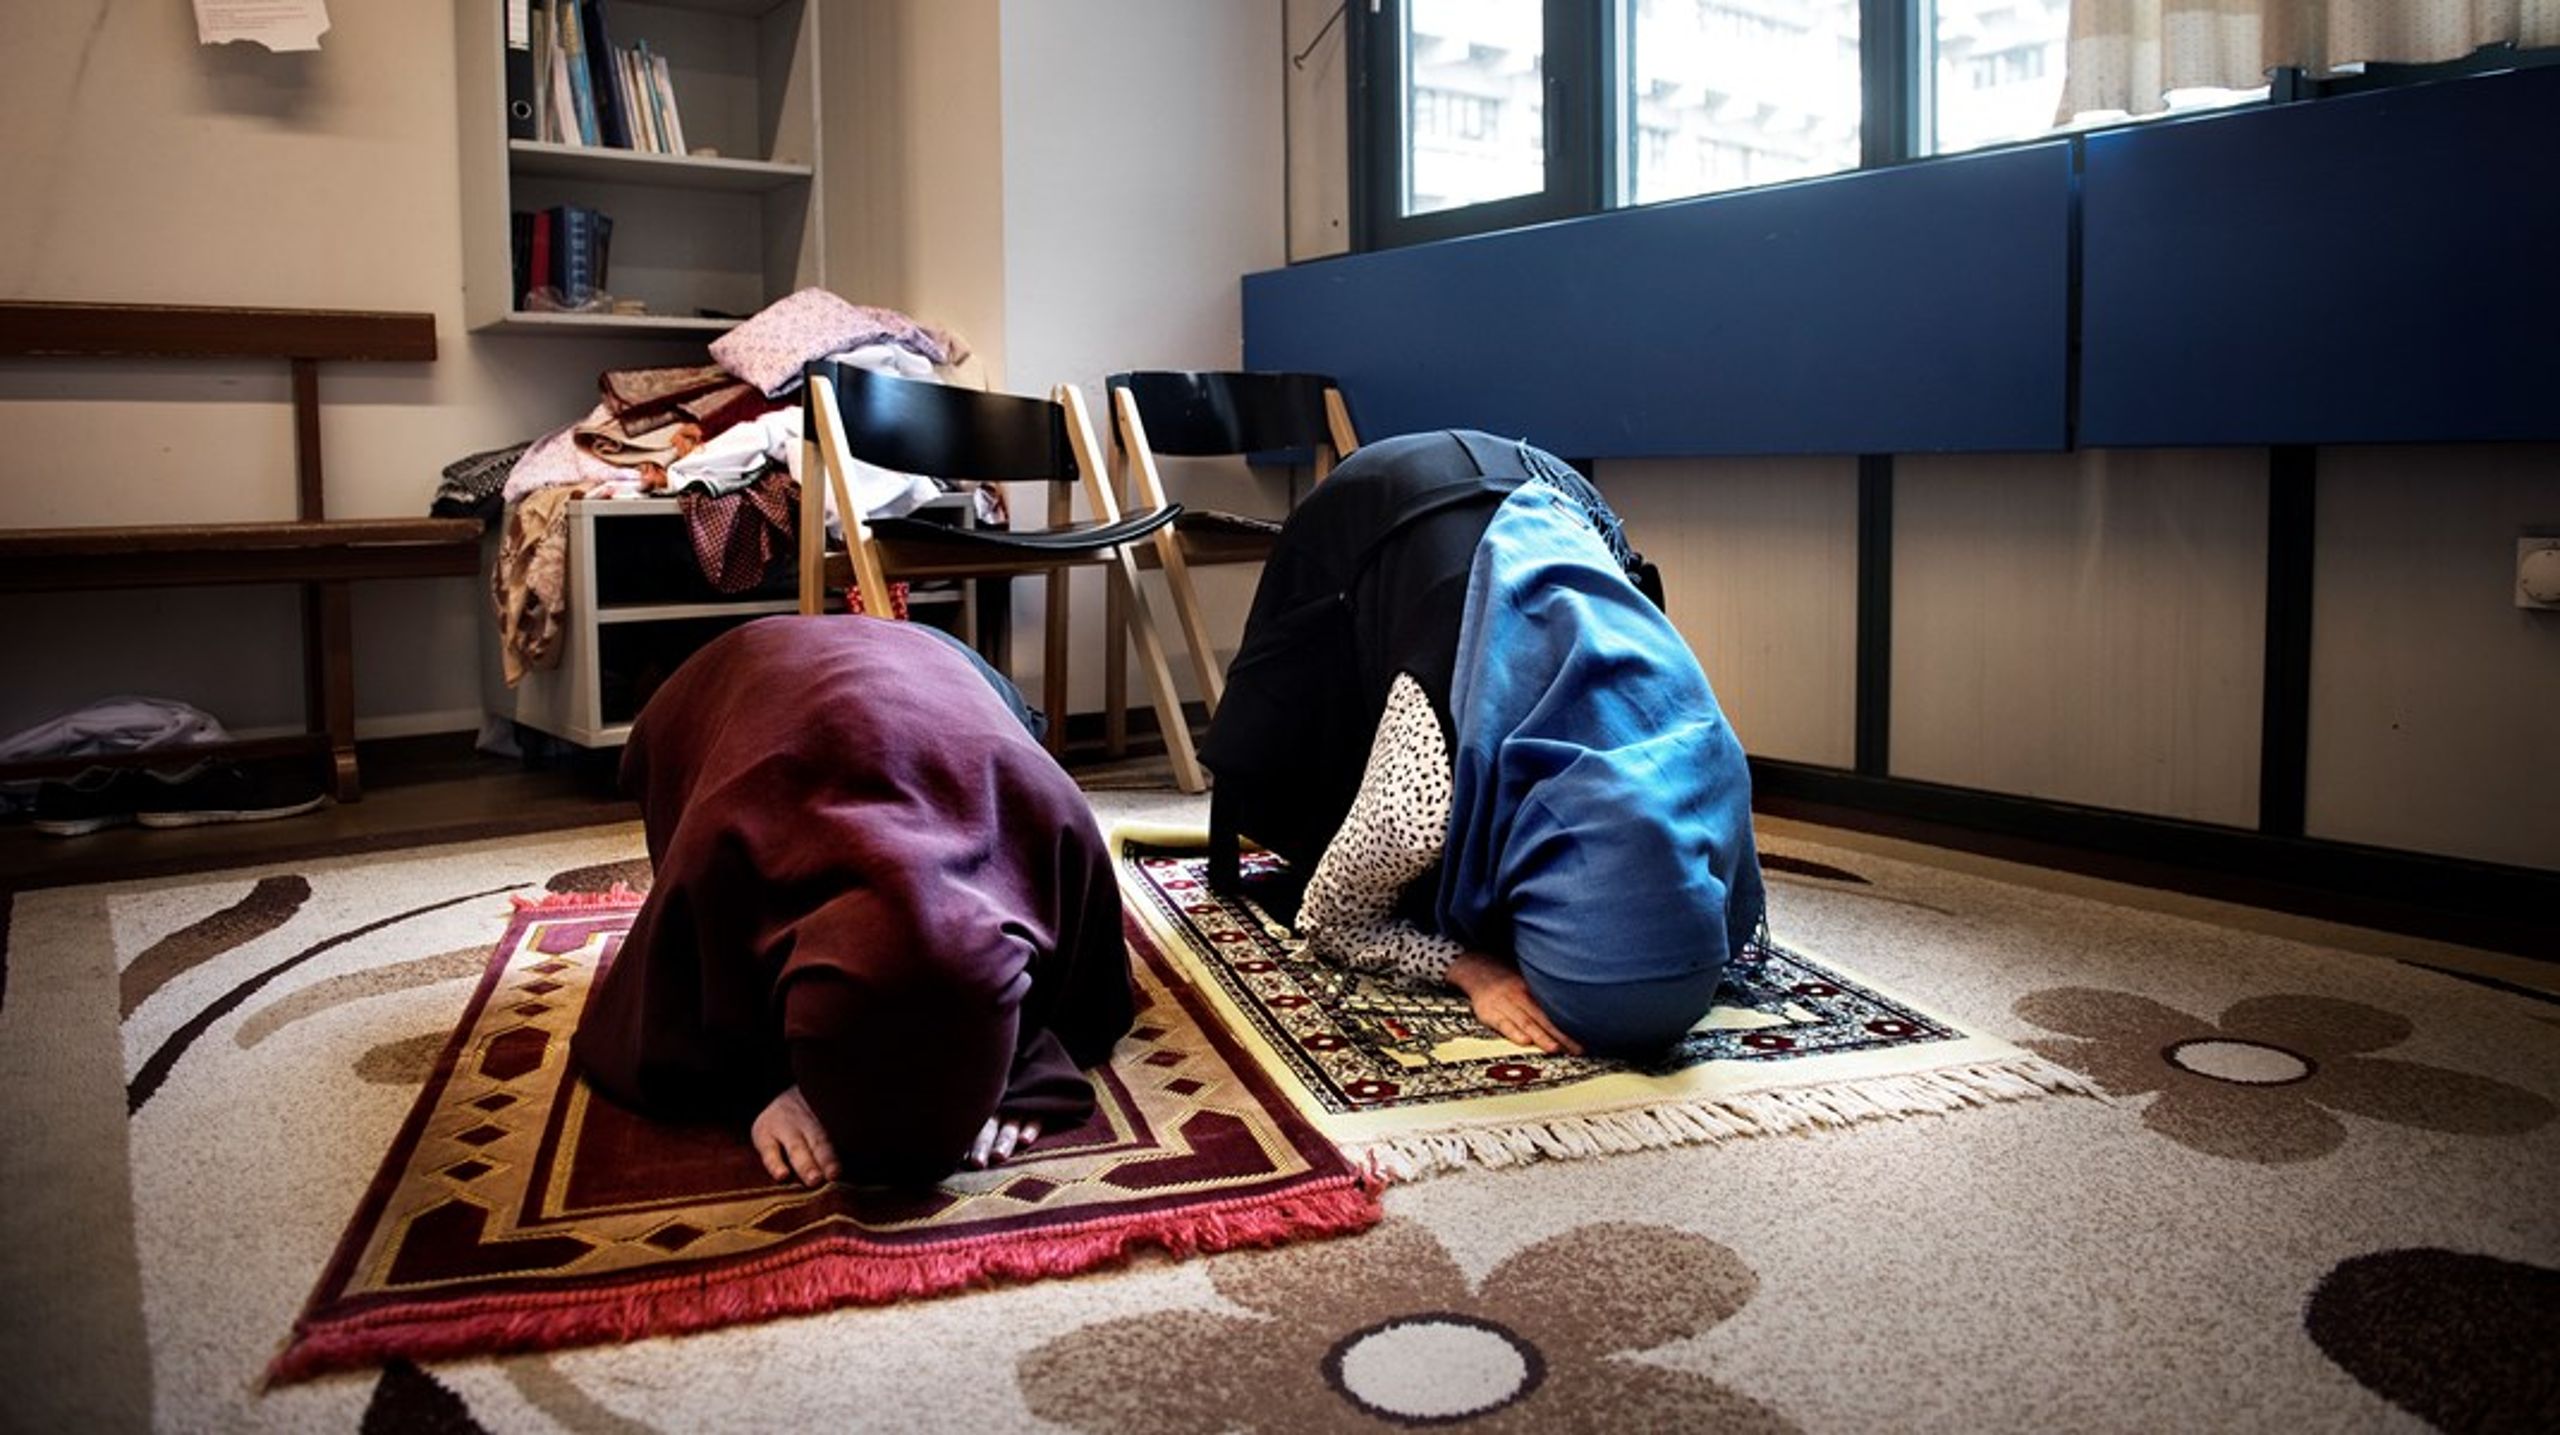 På de danske gymnasier&nbsp;er der direkte forbud mod bøn på skolens arealer. Men hvorfor politiseres noget så fredeligt som en bøn, spørger Zainab Nasrati.